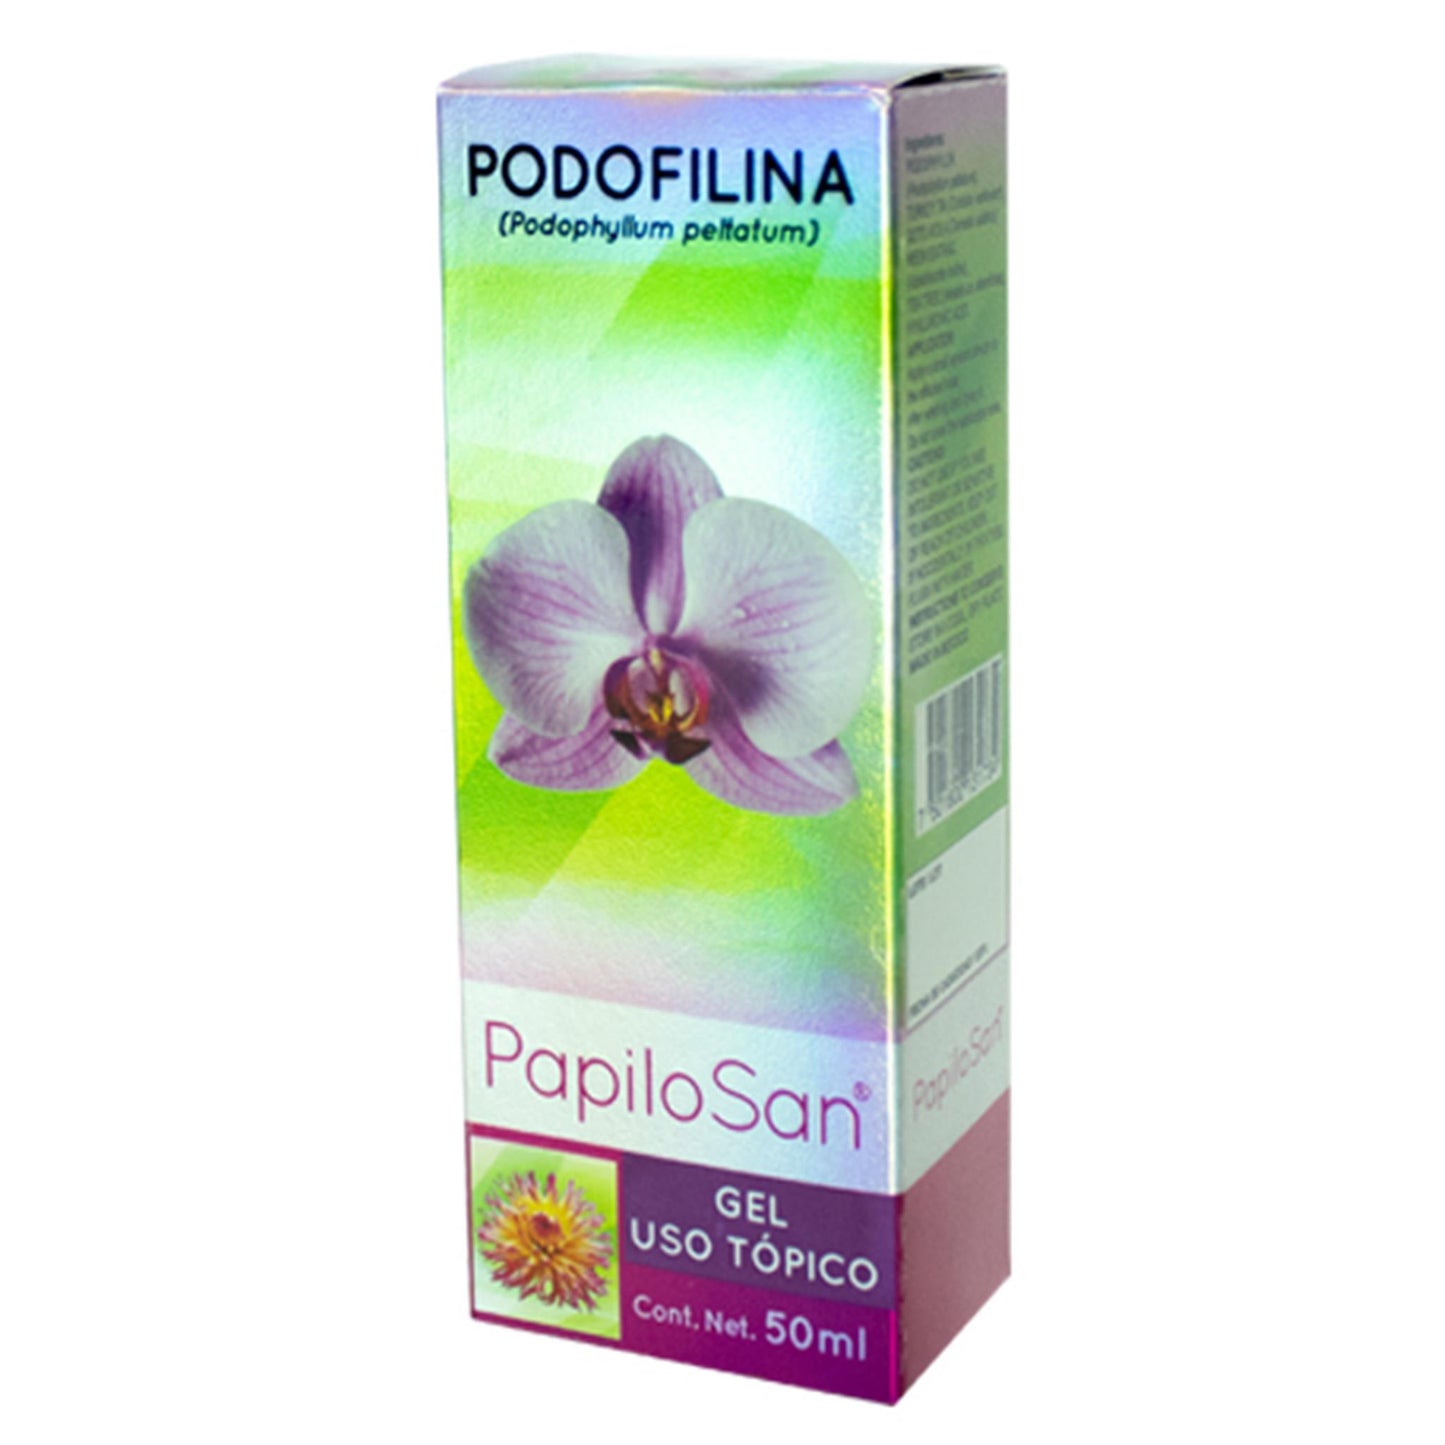 PAPILOSAN ® gel uso tópico 50ml